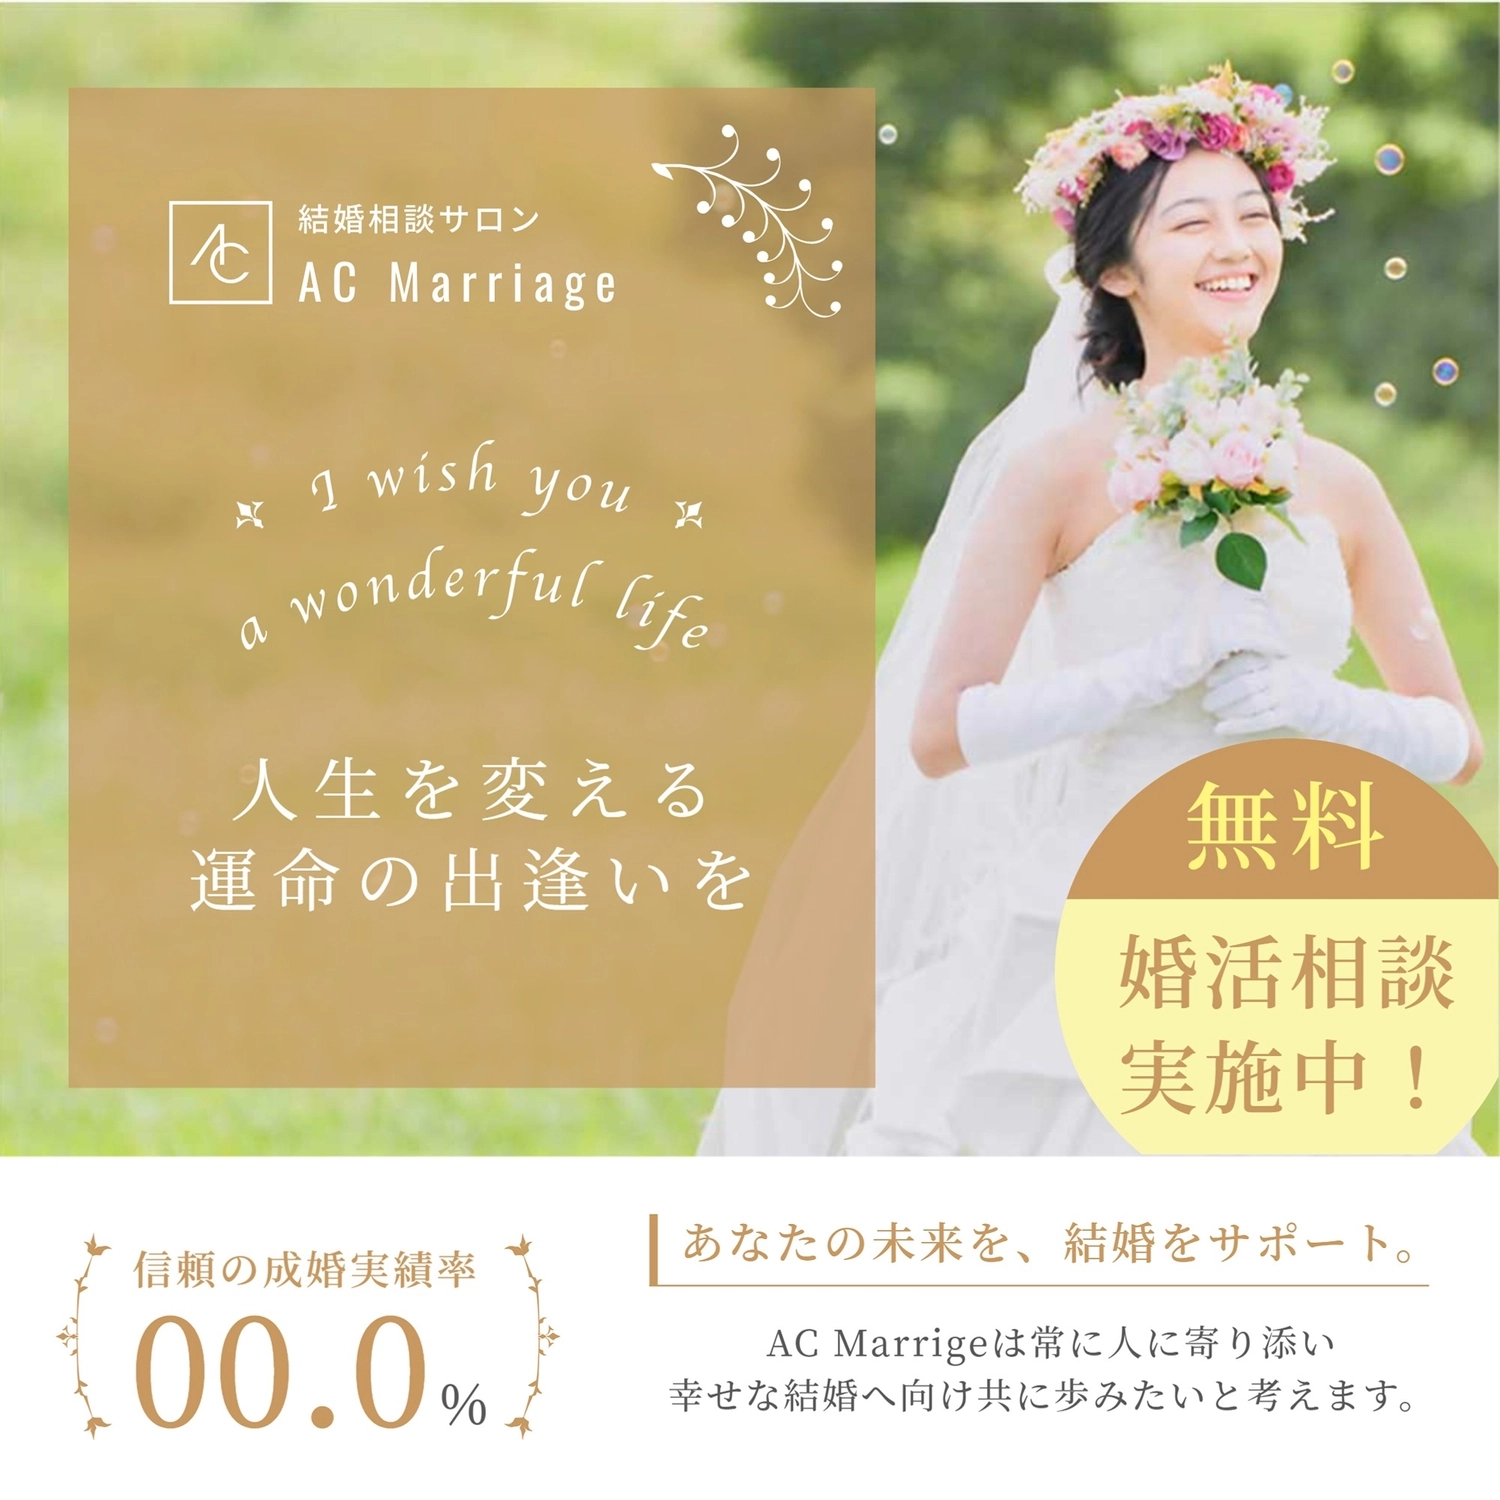 高原の背景の花嫁テンプレート, Instagram 廣告, 婚介, 諮詢, IG廣告 模板